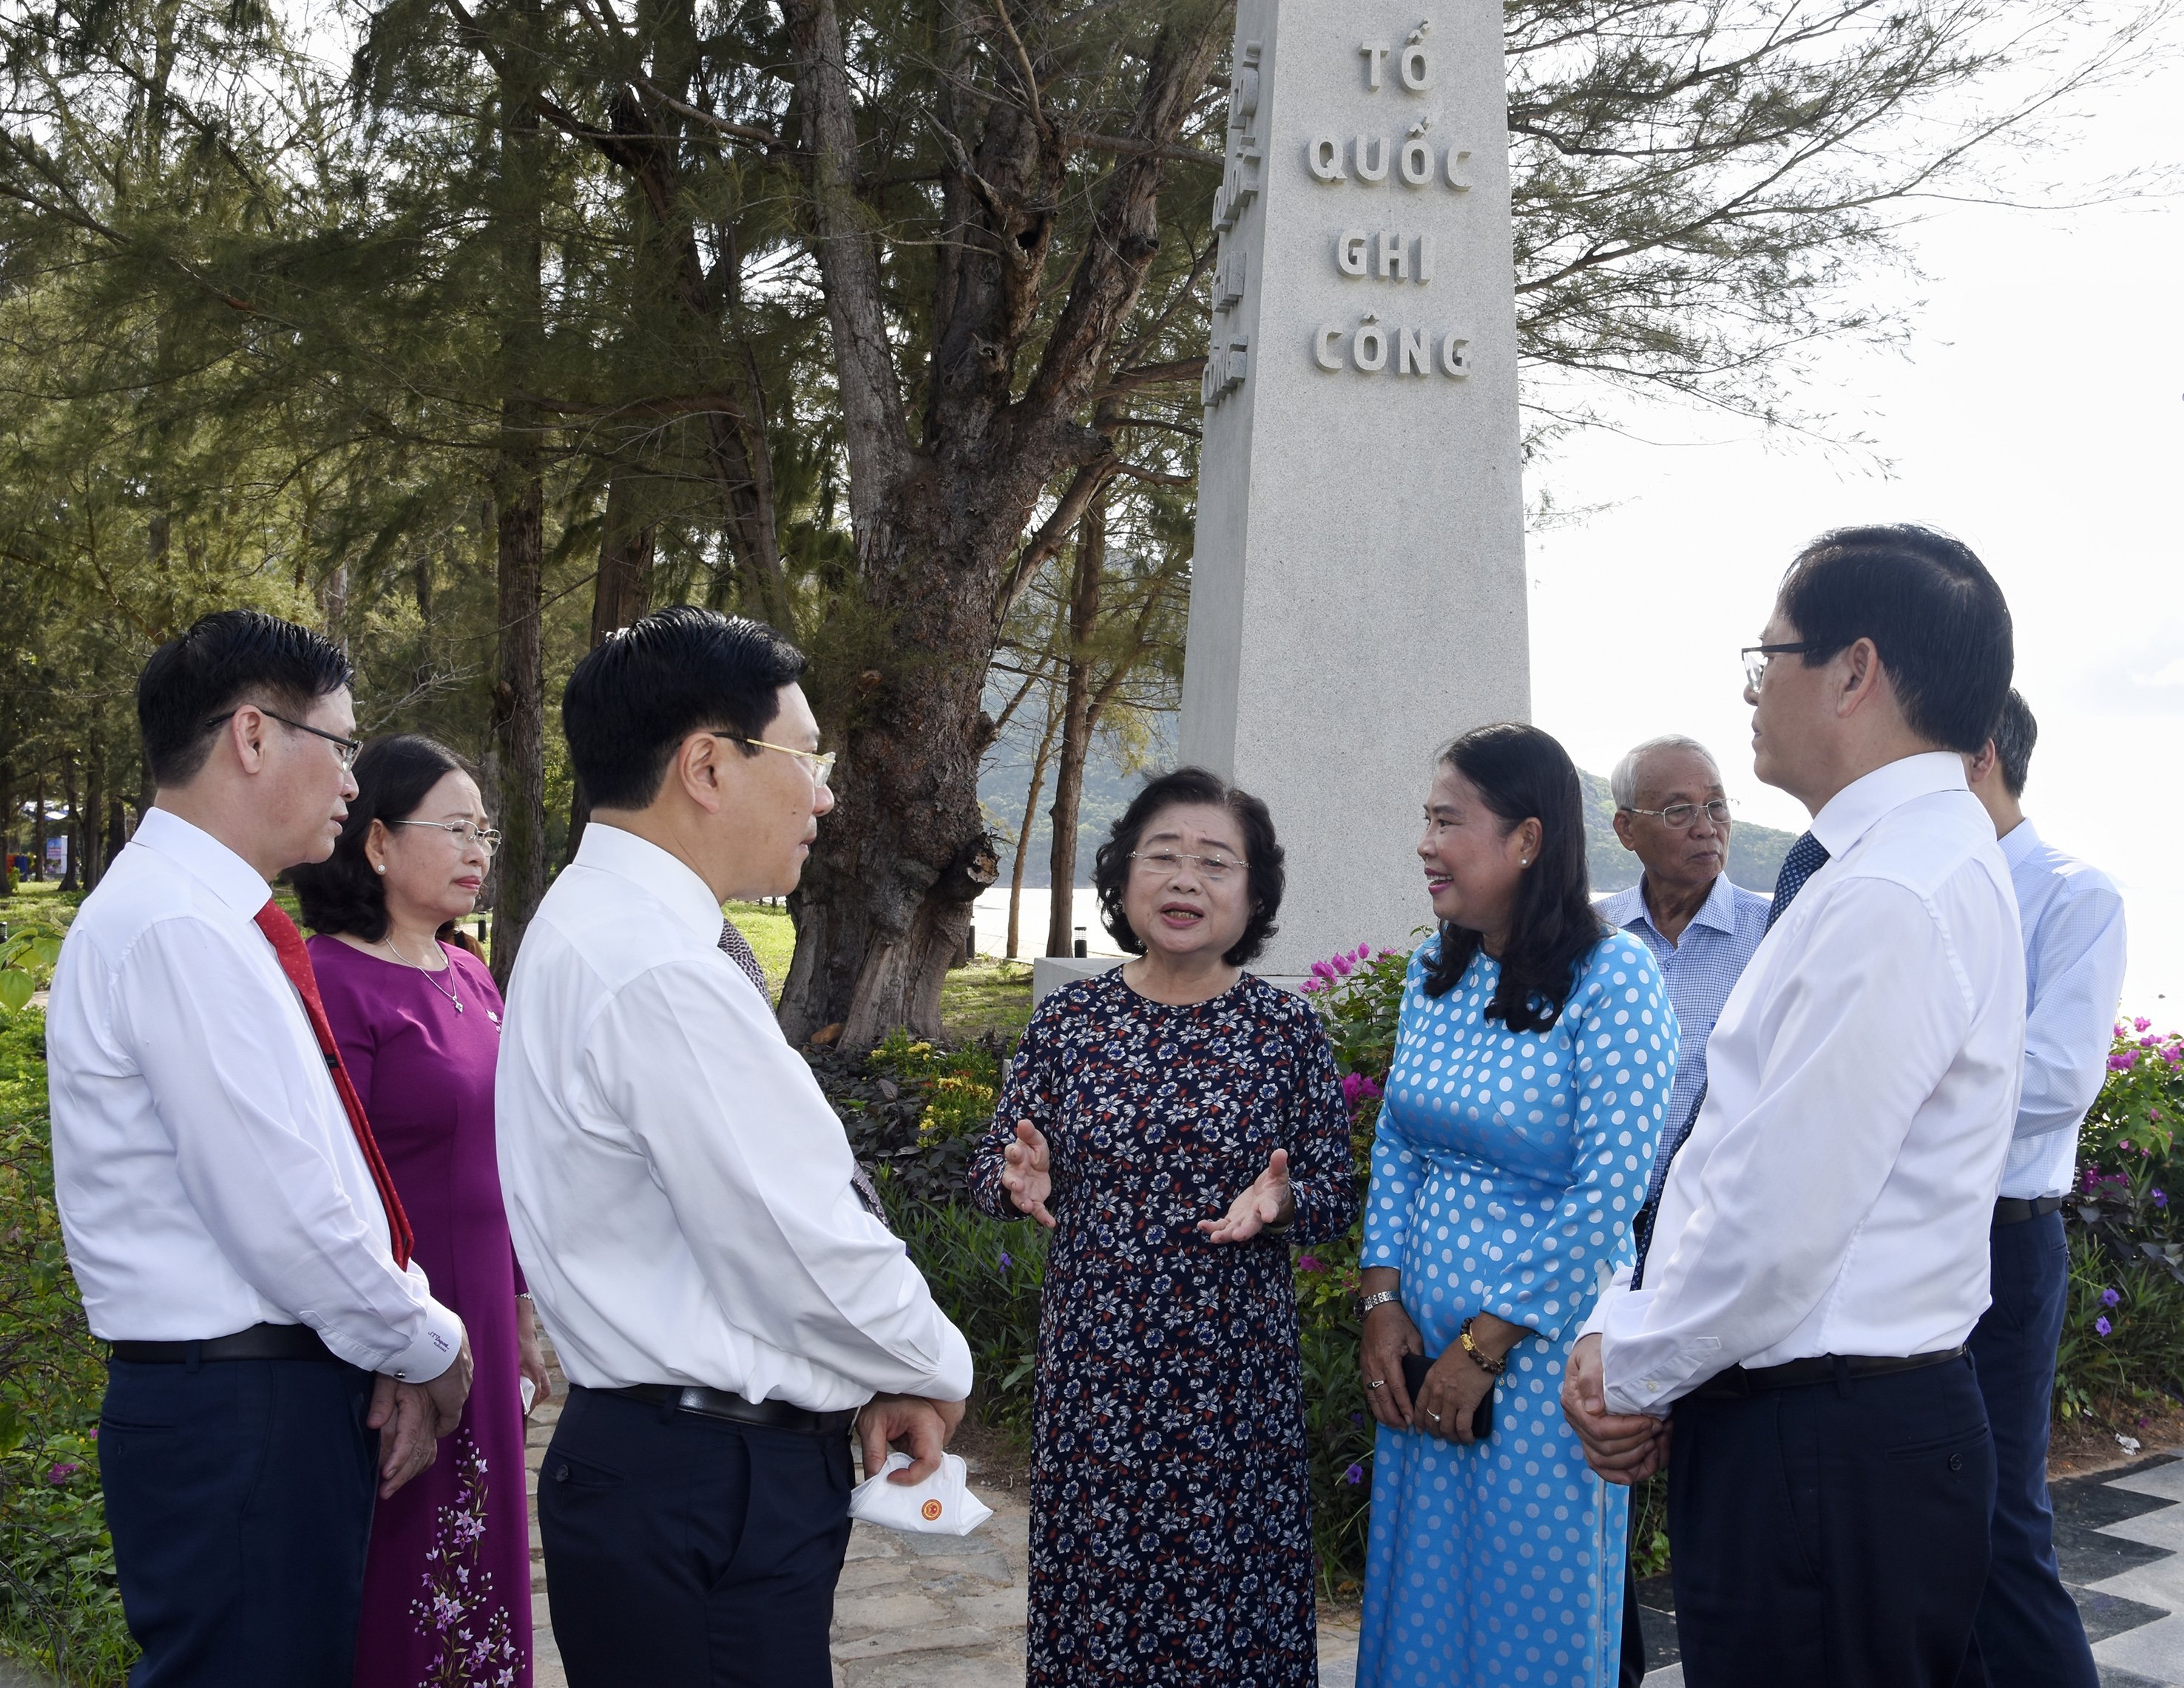 Bà Trương Mỹ Hoa, nguyên Phó Chủ tịch nước, cựu tù chính trị Côn Đảo kể lại những câu chuyện về những người chiến sĩ cách mạng, những người yêu nước kiên trung, tình đồng đội, tinh thần đấu tranh chống áp bức của kẻ thù trong ngục tù.